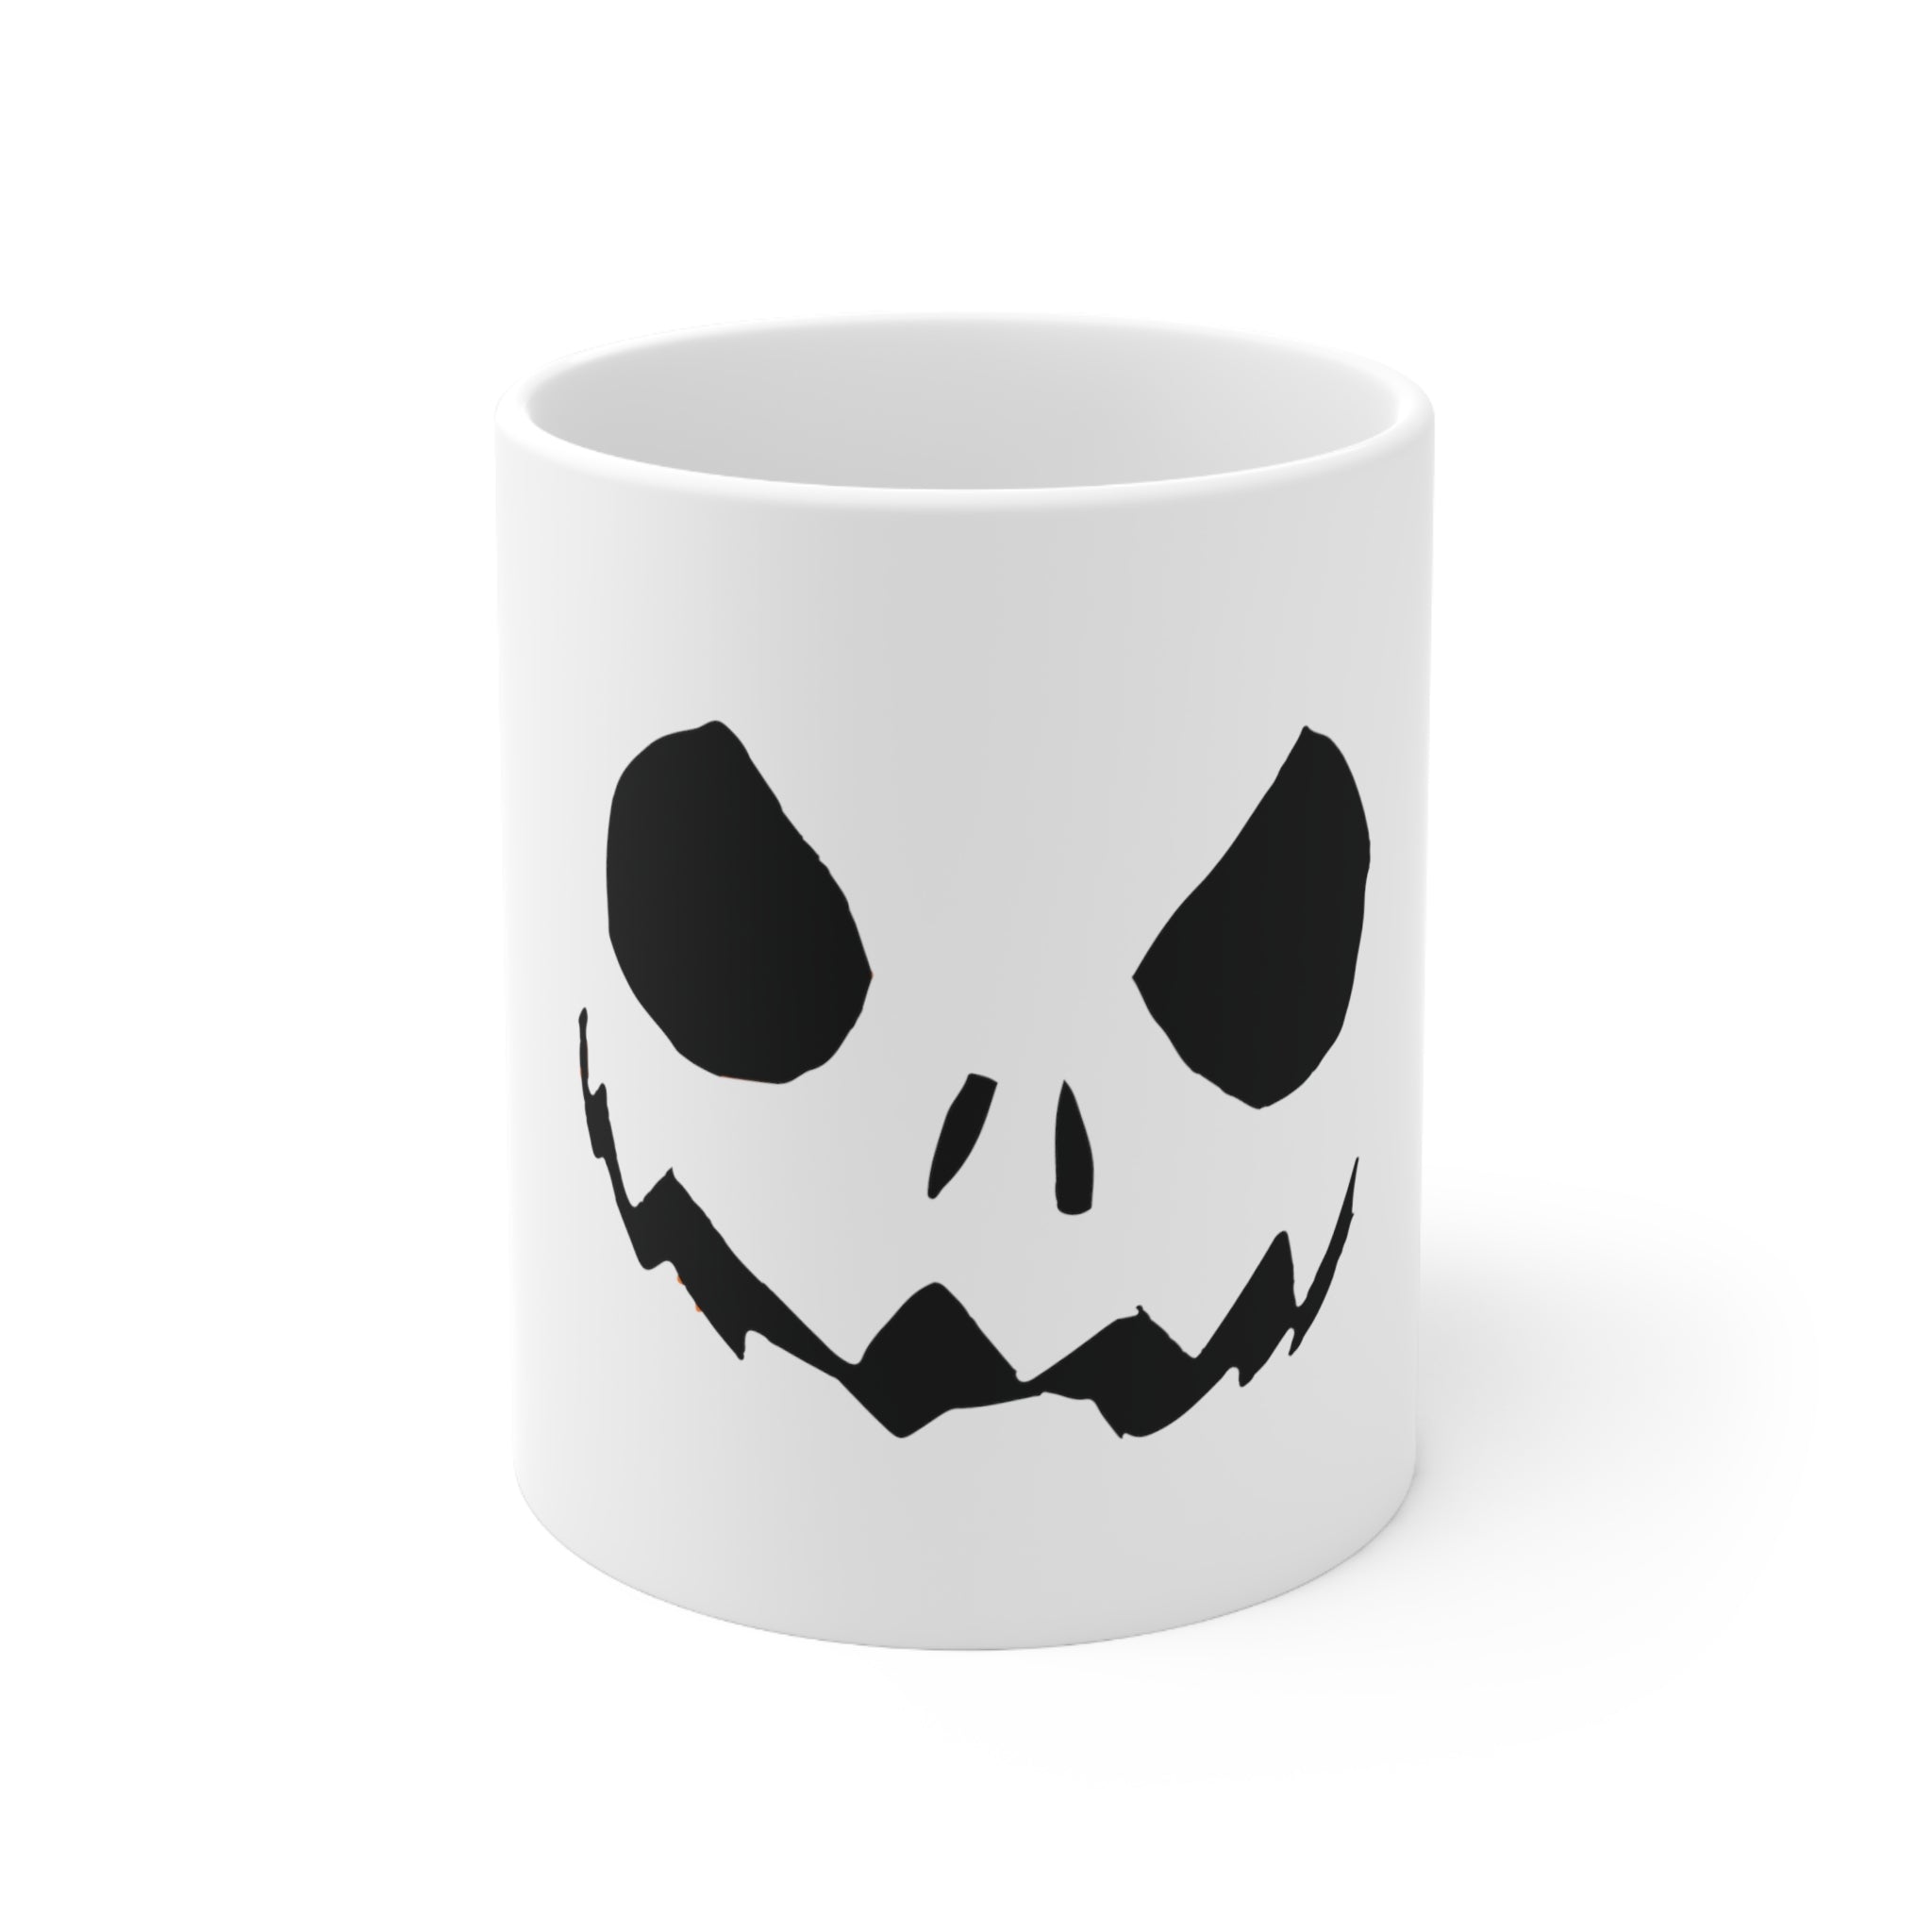 Send Nodes Blender 3D Ceramic Mug 11oz – Jack of Art Shop